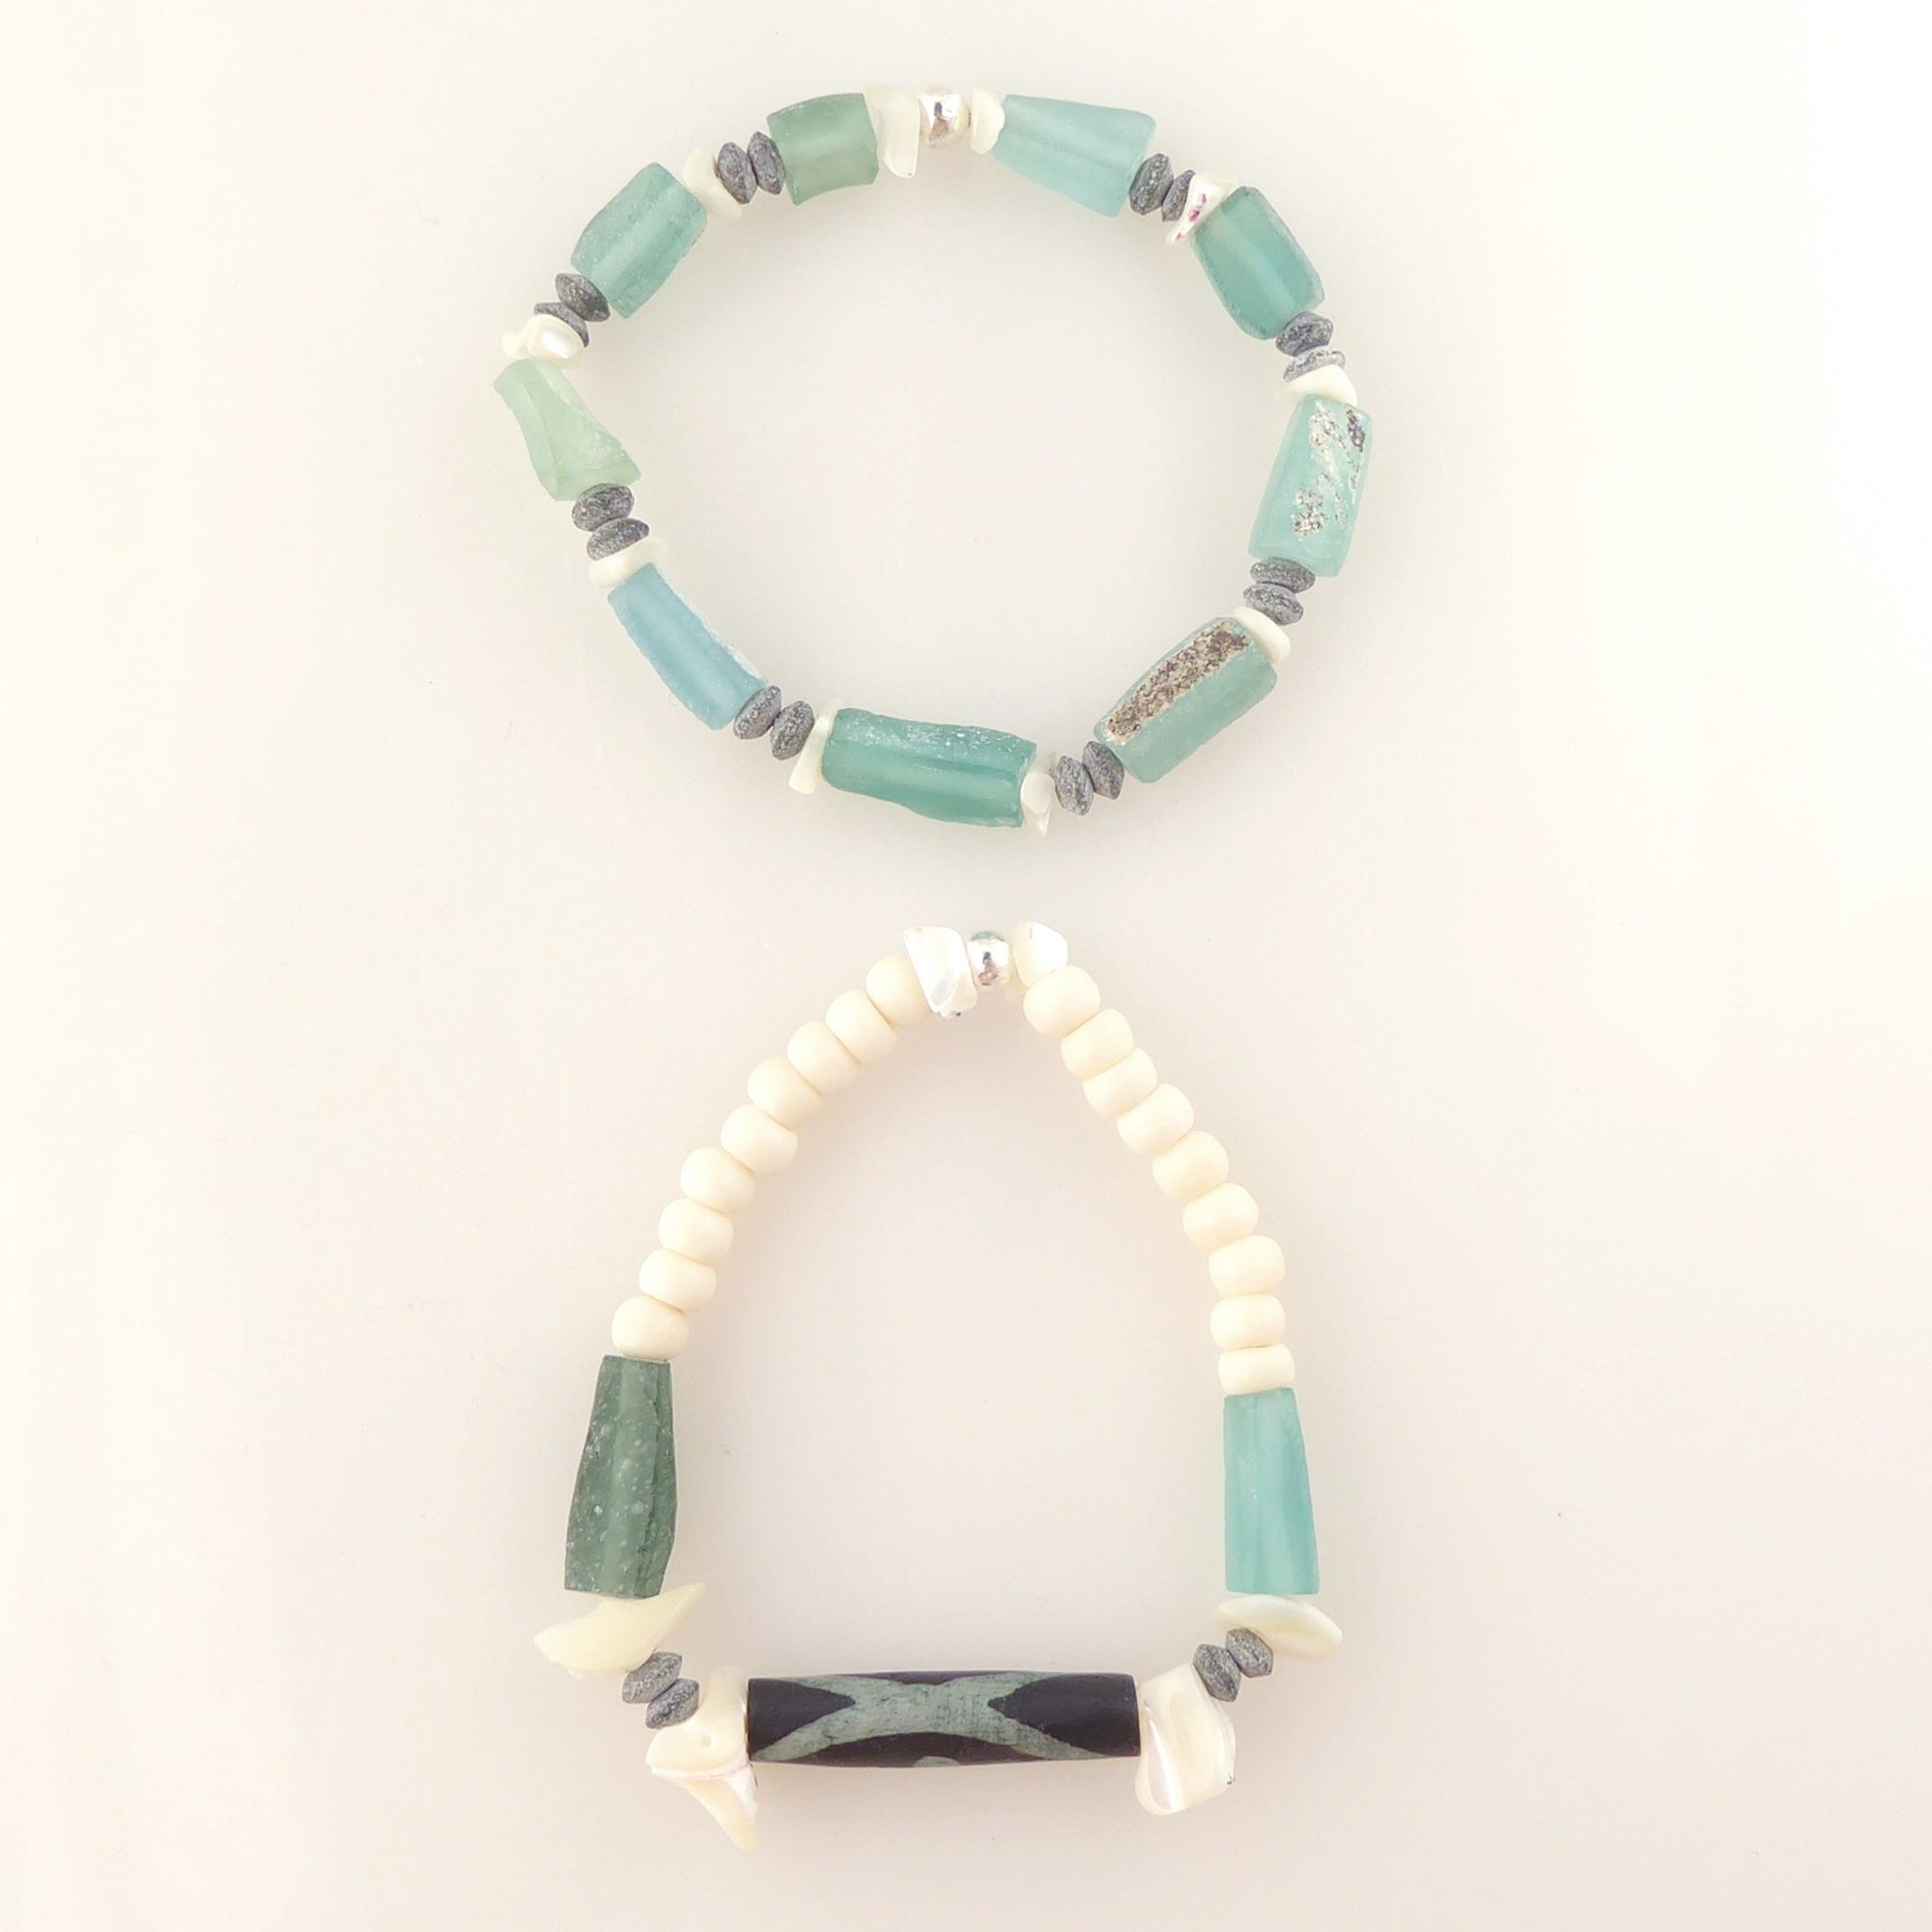 Antique roman glass bracelet by Jenny Dayco 4